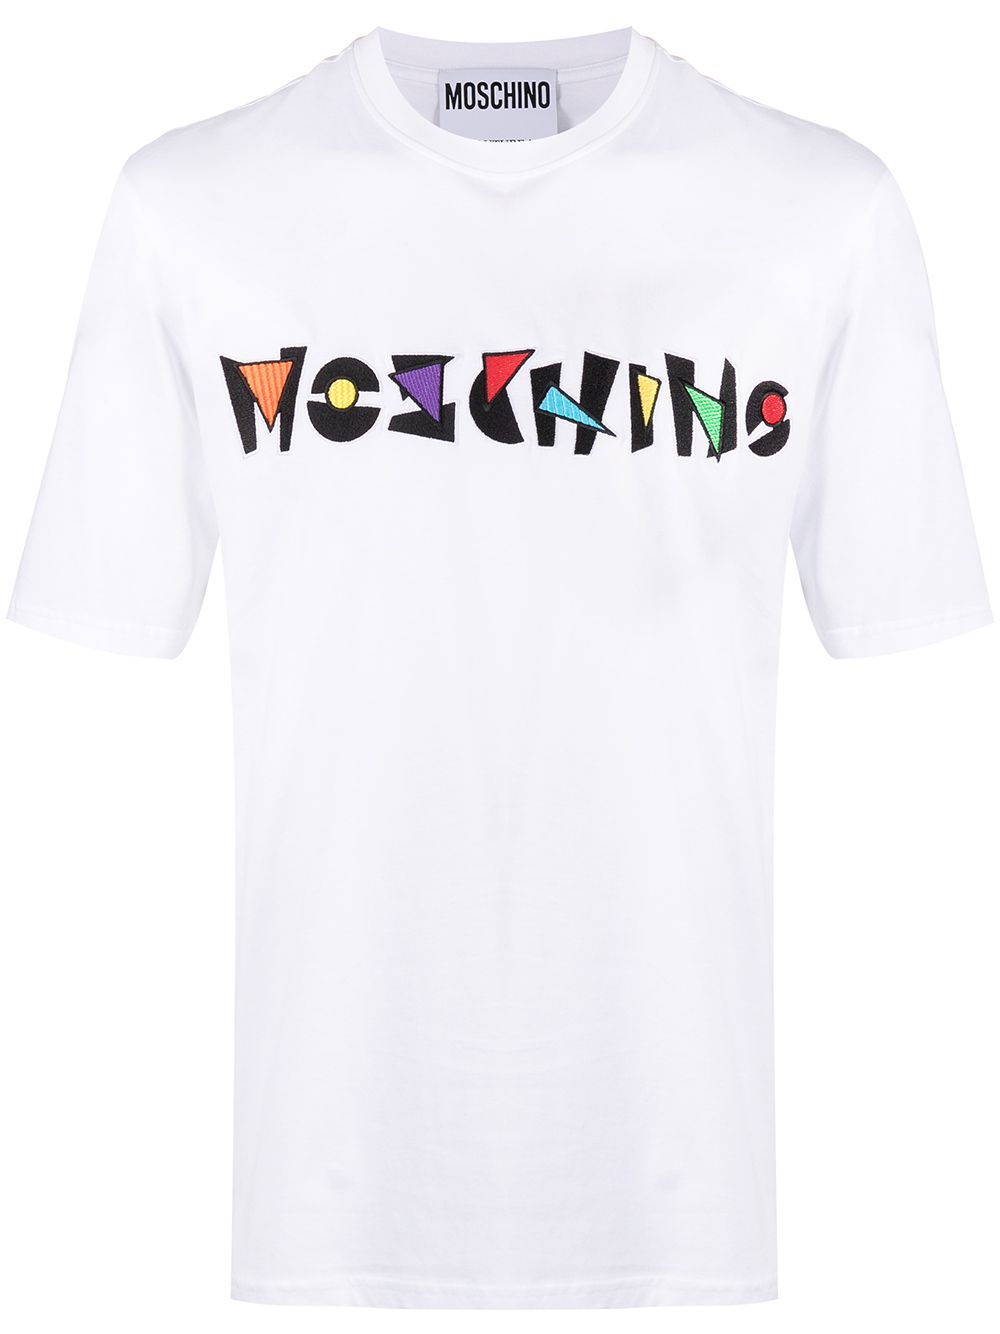 moschino logo shirt